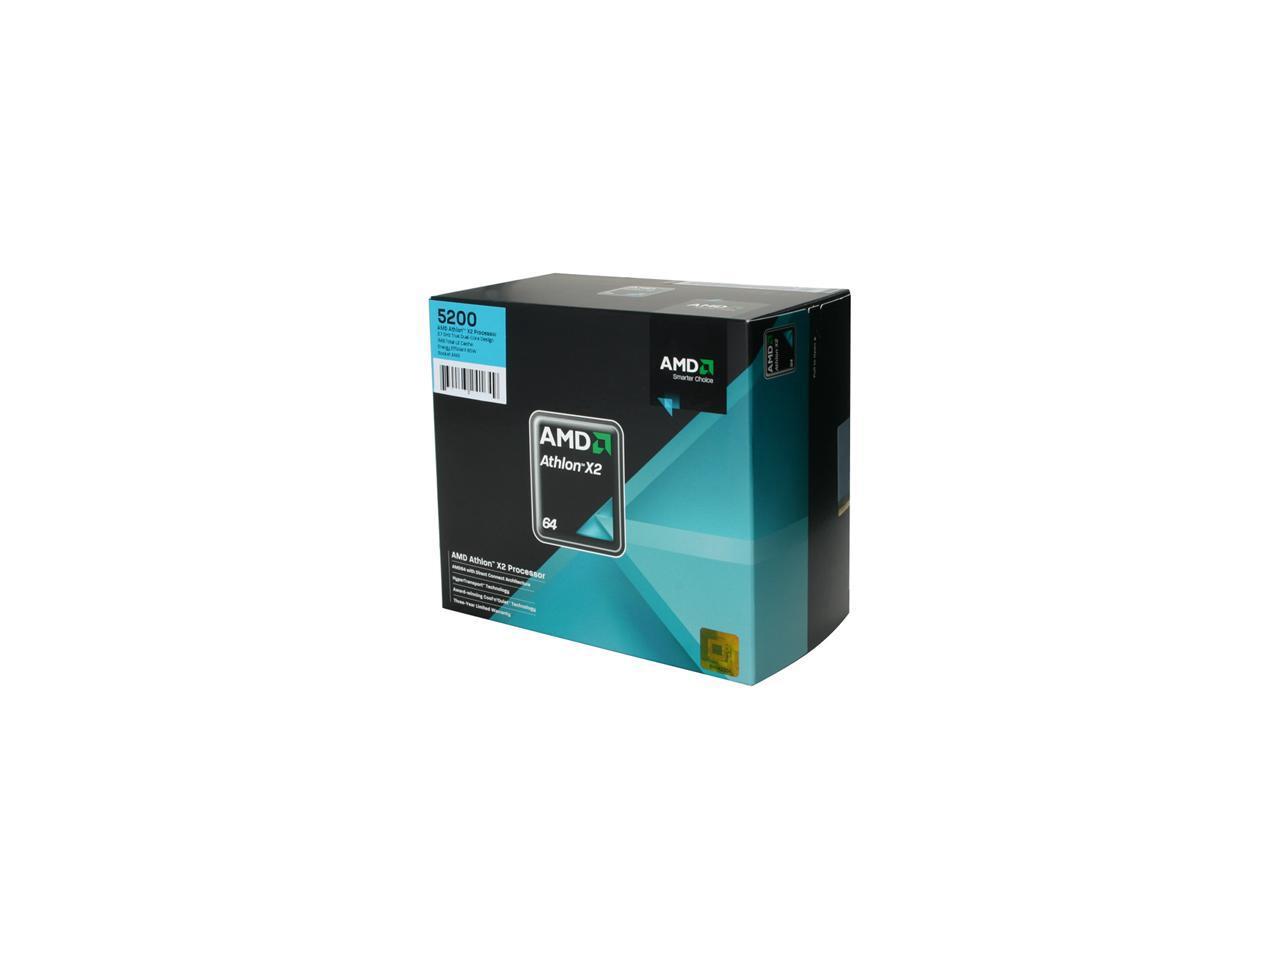 AMD Athlon 64 X2 5200 Brisbane Dual-Core 2.7 GHz Socket AM2 65W ADO5200DOBOX Processor